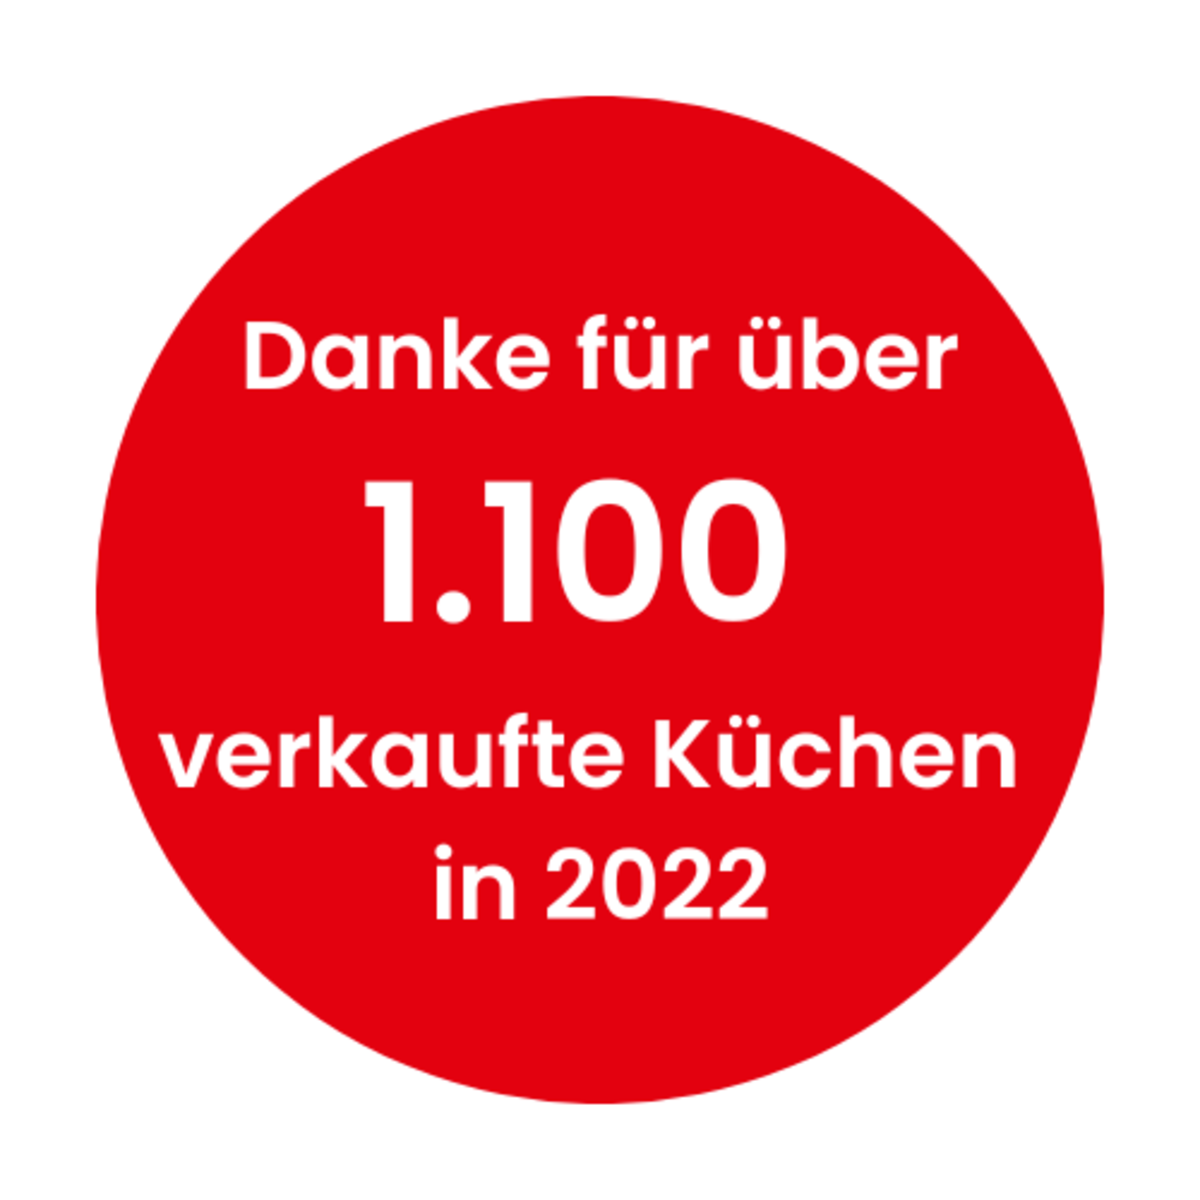 Danke für 1.100 verkaufte Küchen in 2022